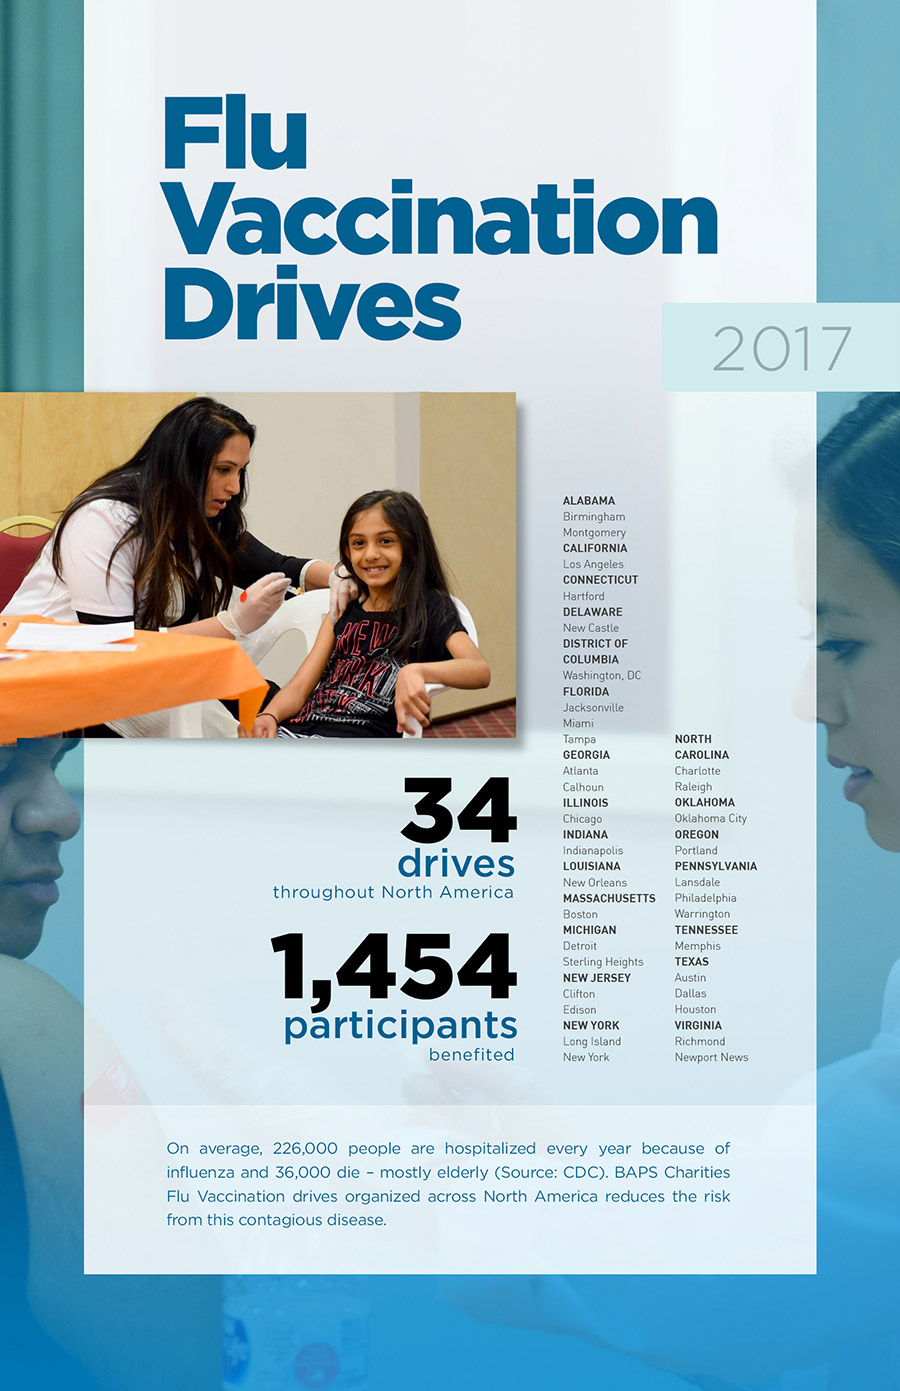 Flu Vaccination Drive - BAPSCharities - North American Activities Annual Report 2017